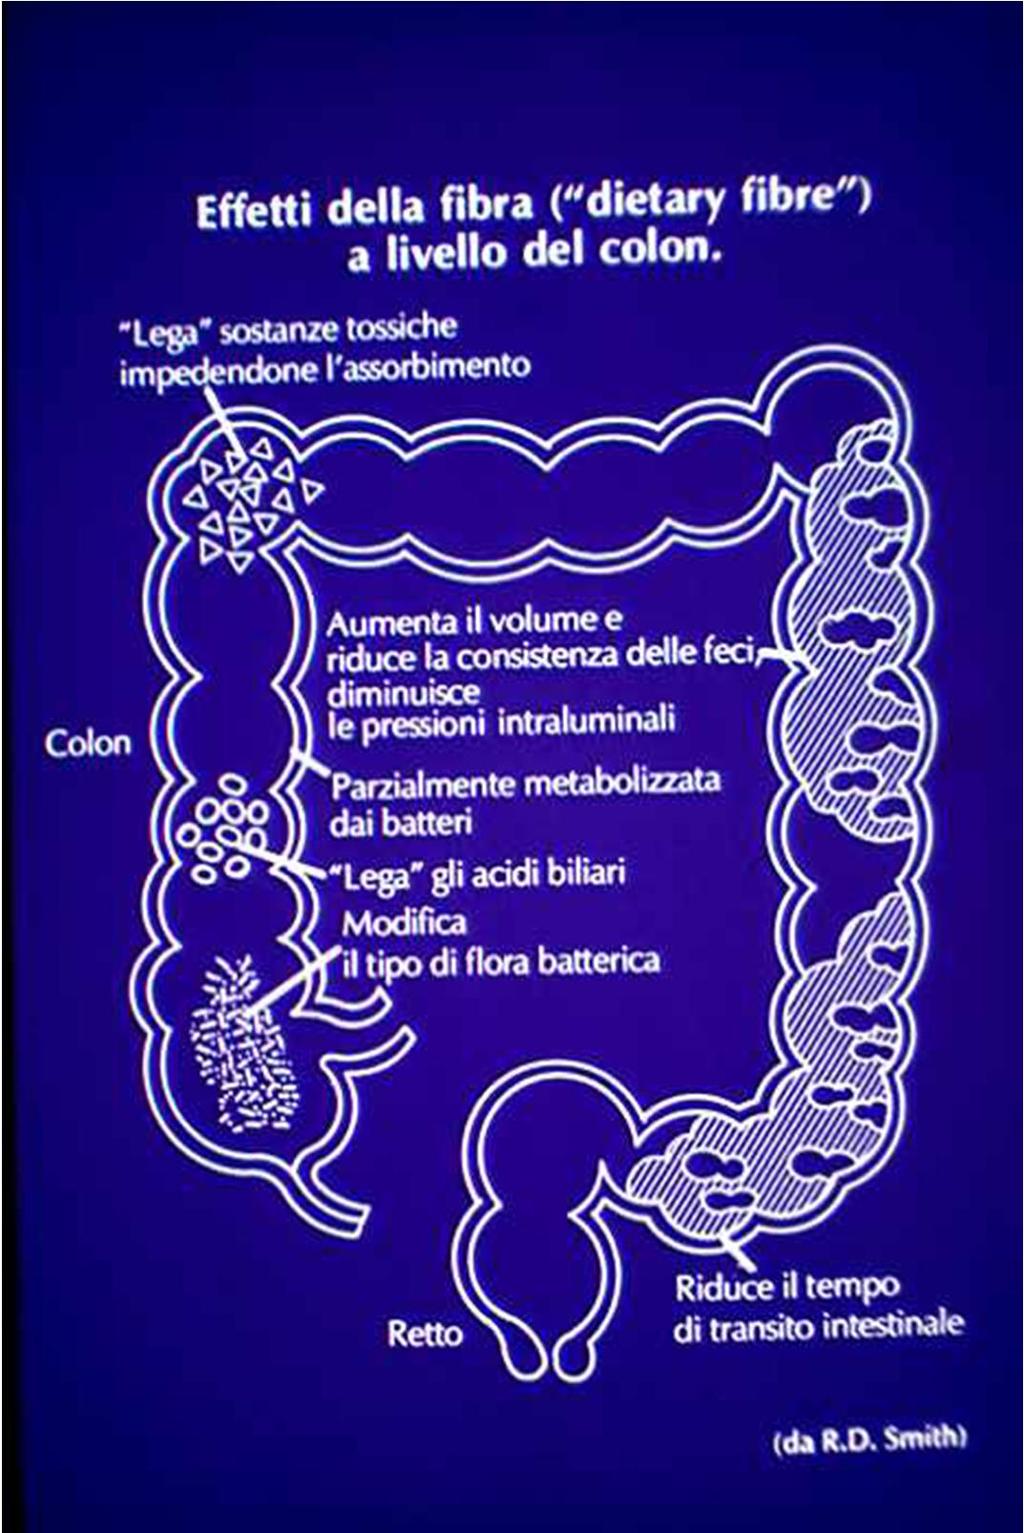 Le fibre svolgono, inoltre, delle funzioni molto importanti a livello del colon: 1. modificano il tipo di flora batterica intestinale; 2. legano gli acidi biliari; 3.